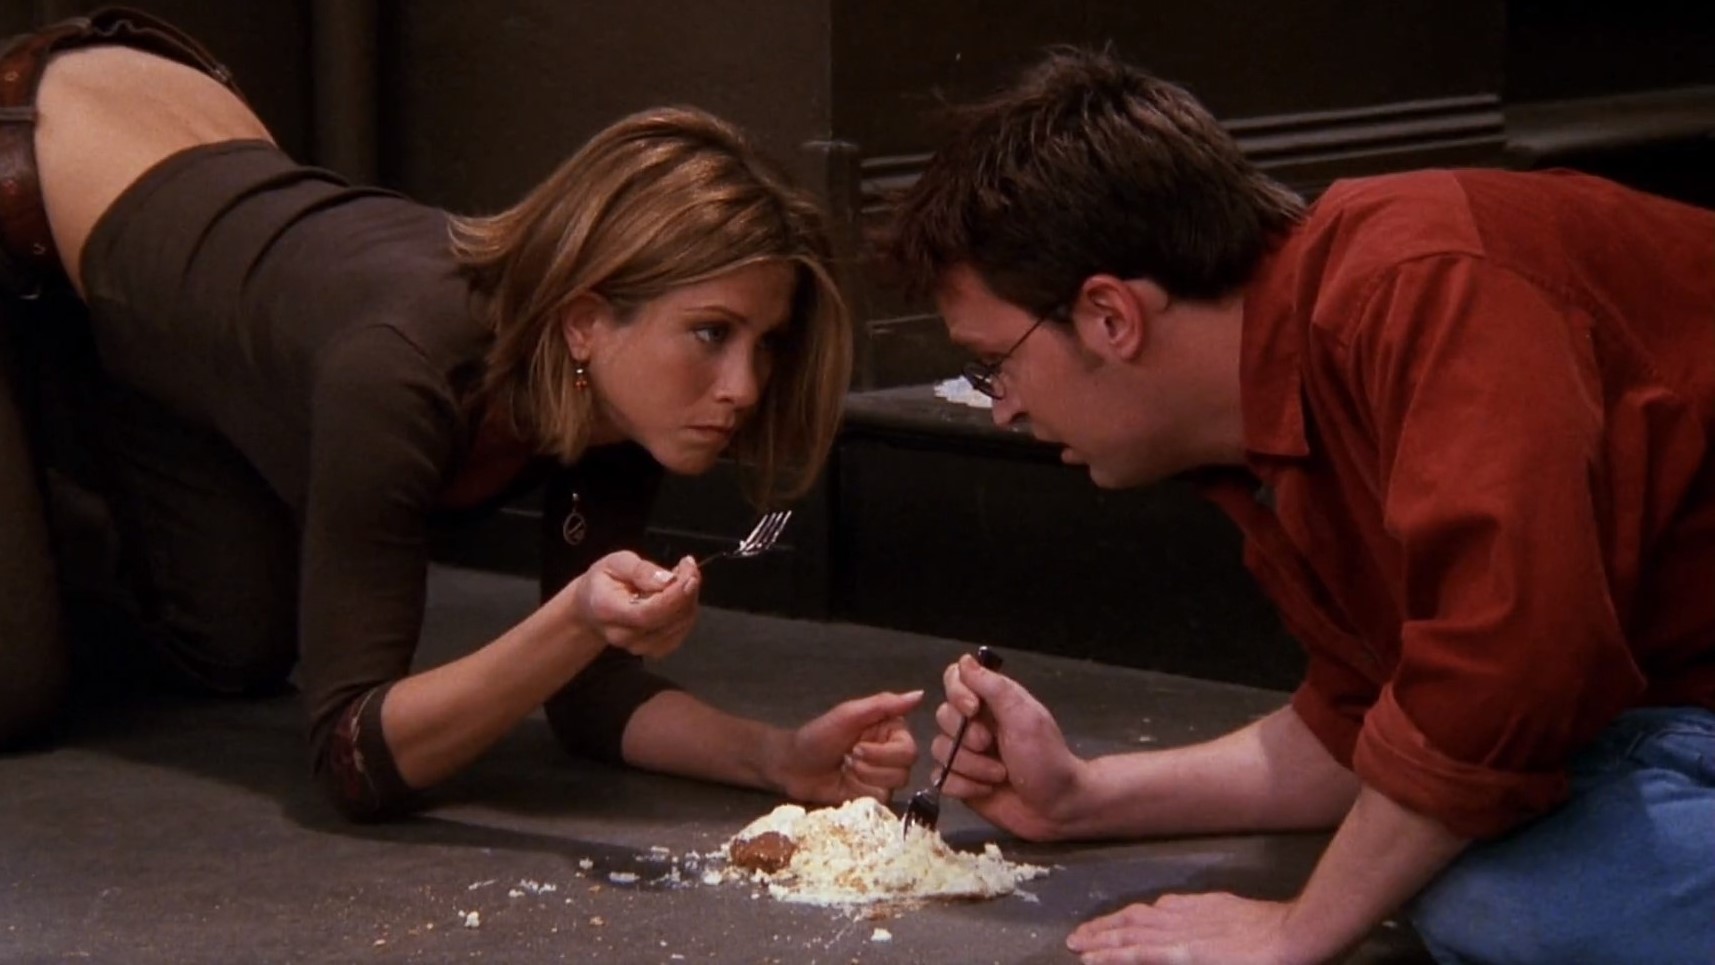 Scena z serialu "Przyjaciele". Rachel i Chandler jedzą sernik z podłogi.